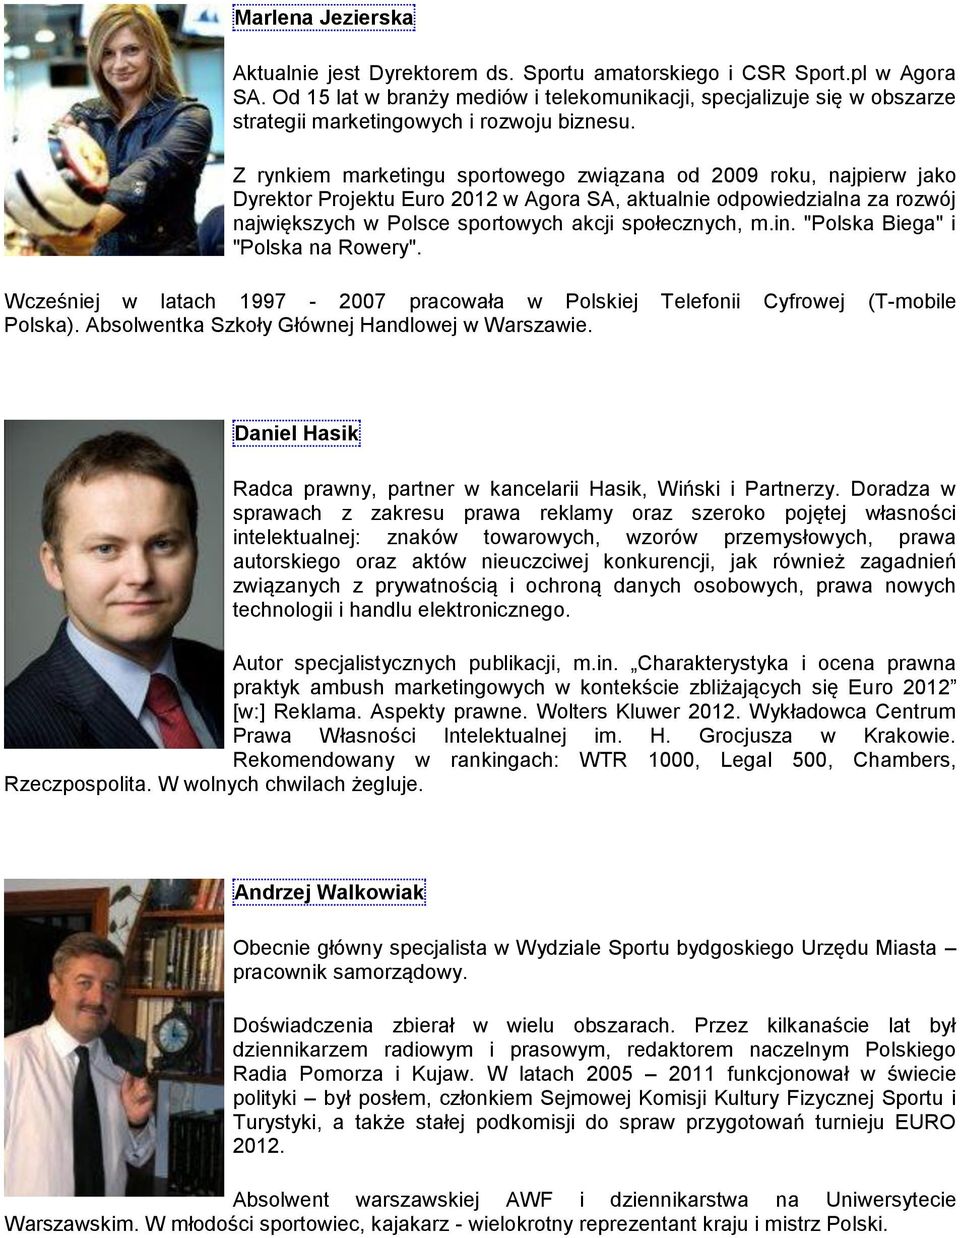 Z rynkiem marketingu sportowego związana od 2009 roku, najpierw jako Dyrektor Projektu Euro 2012 w Agora SA, aktualnie odpowiedzialna za rozwój największych w Polsce sportowych akcji społecznych, m.